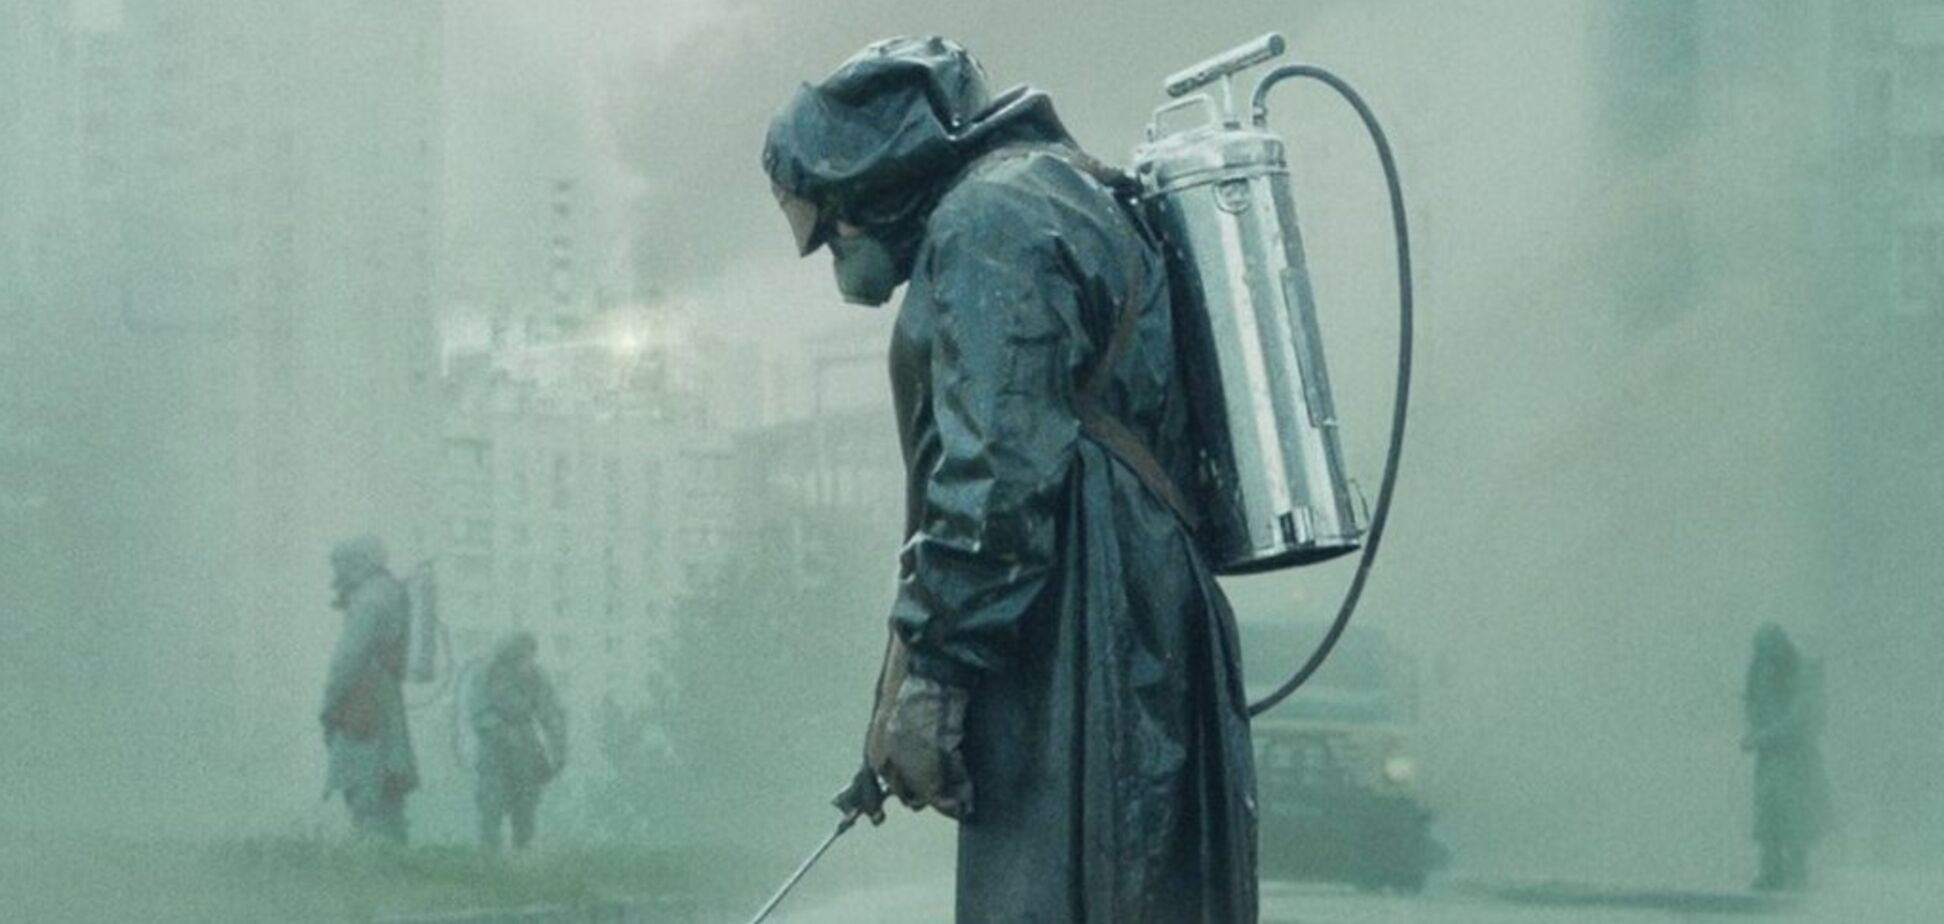 Вийшла третя серія 'Чорнобиля' від HBO: де дивитися онлайн